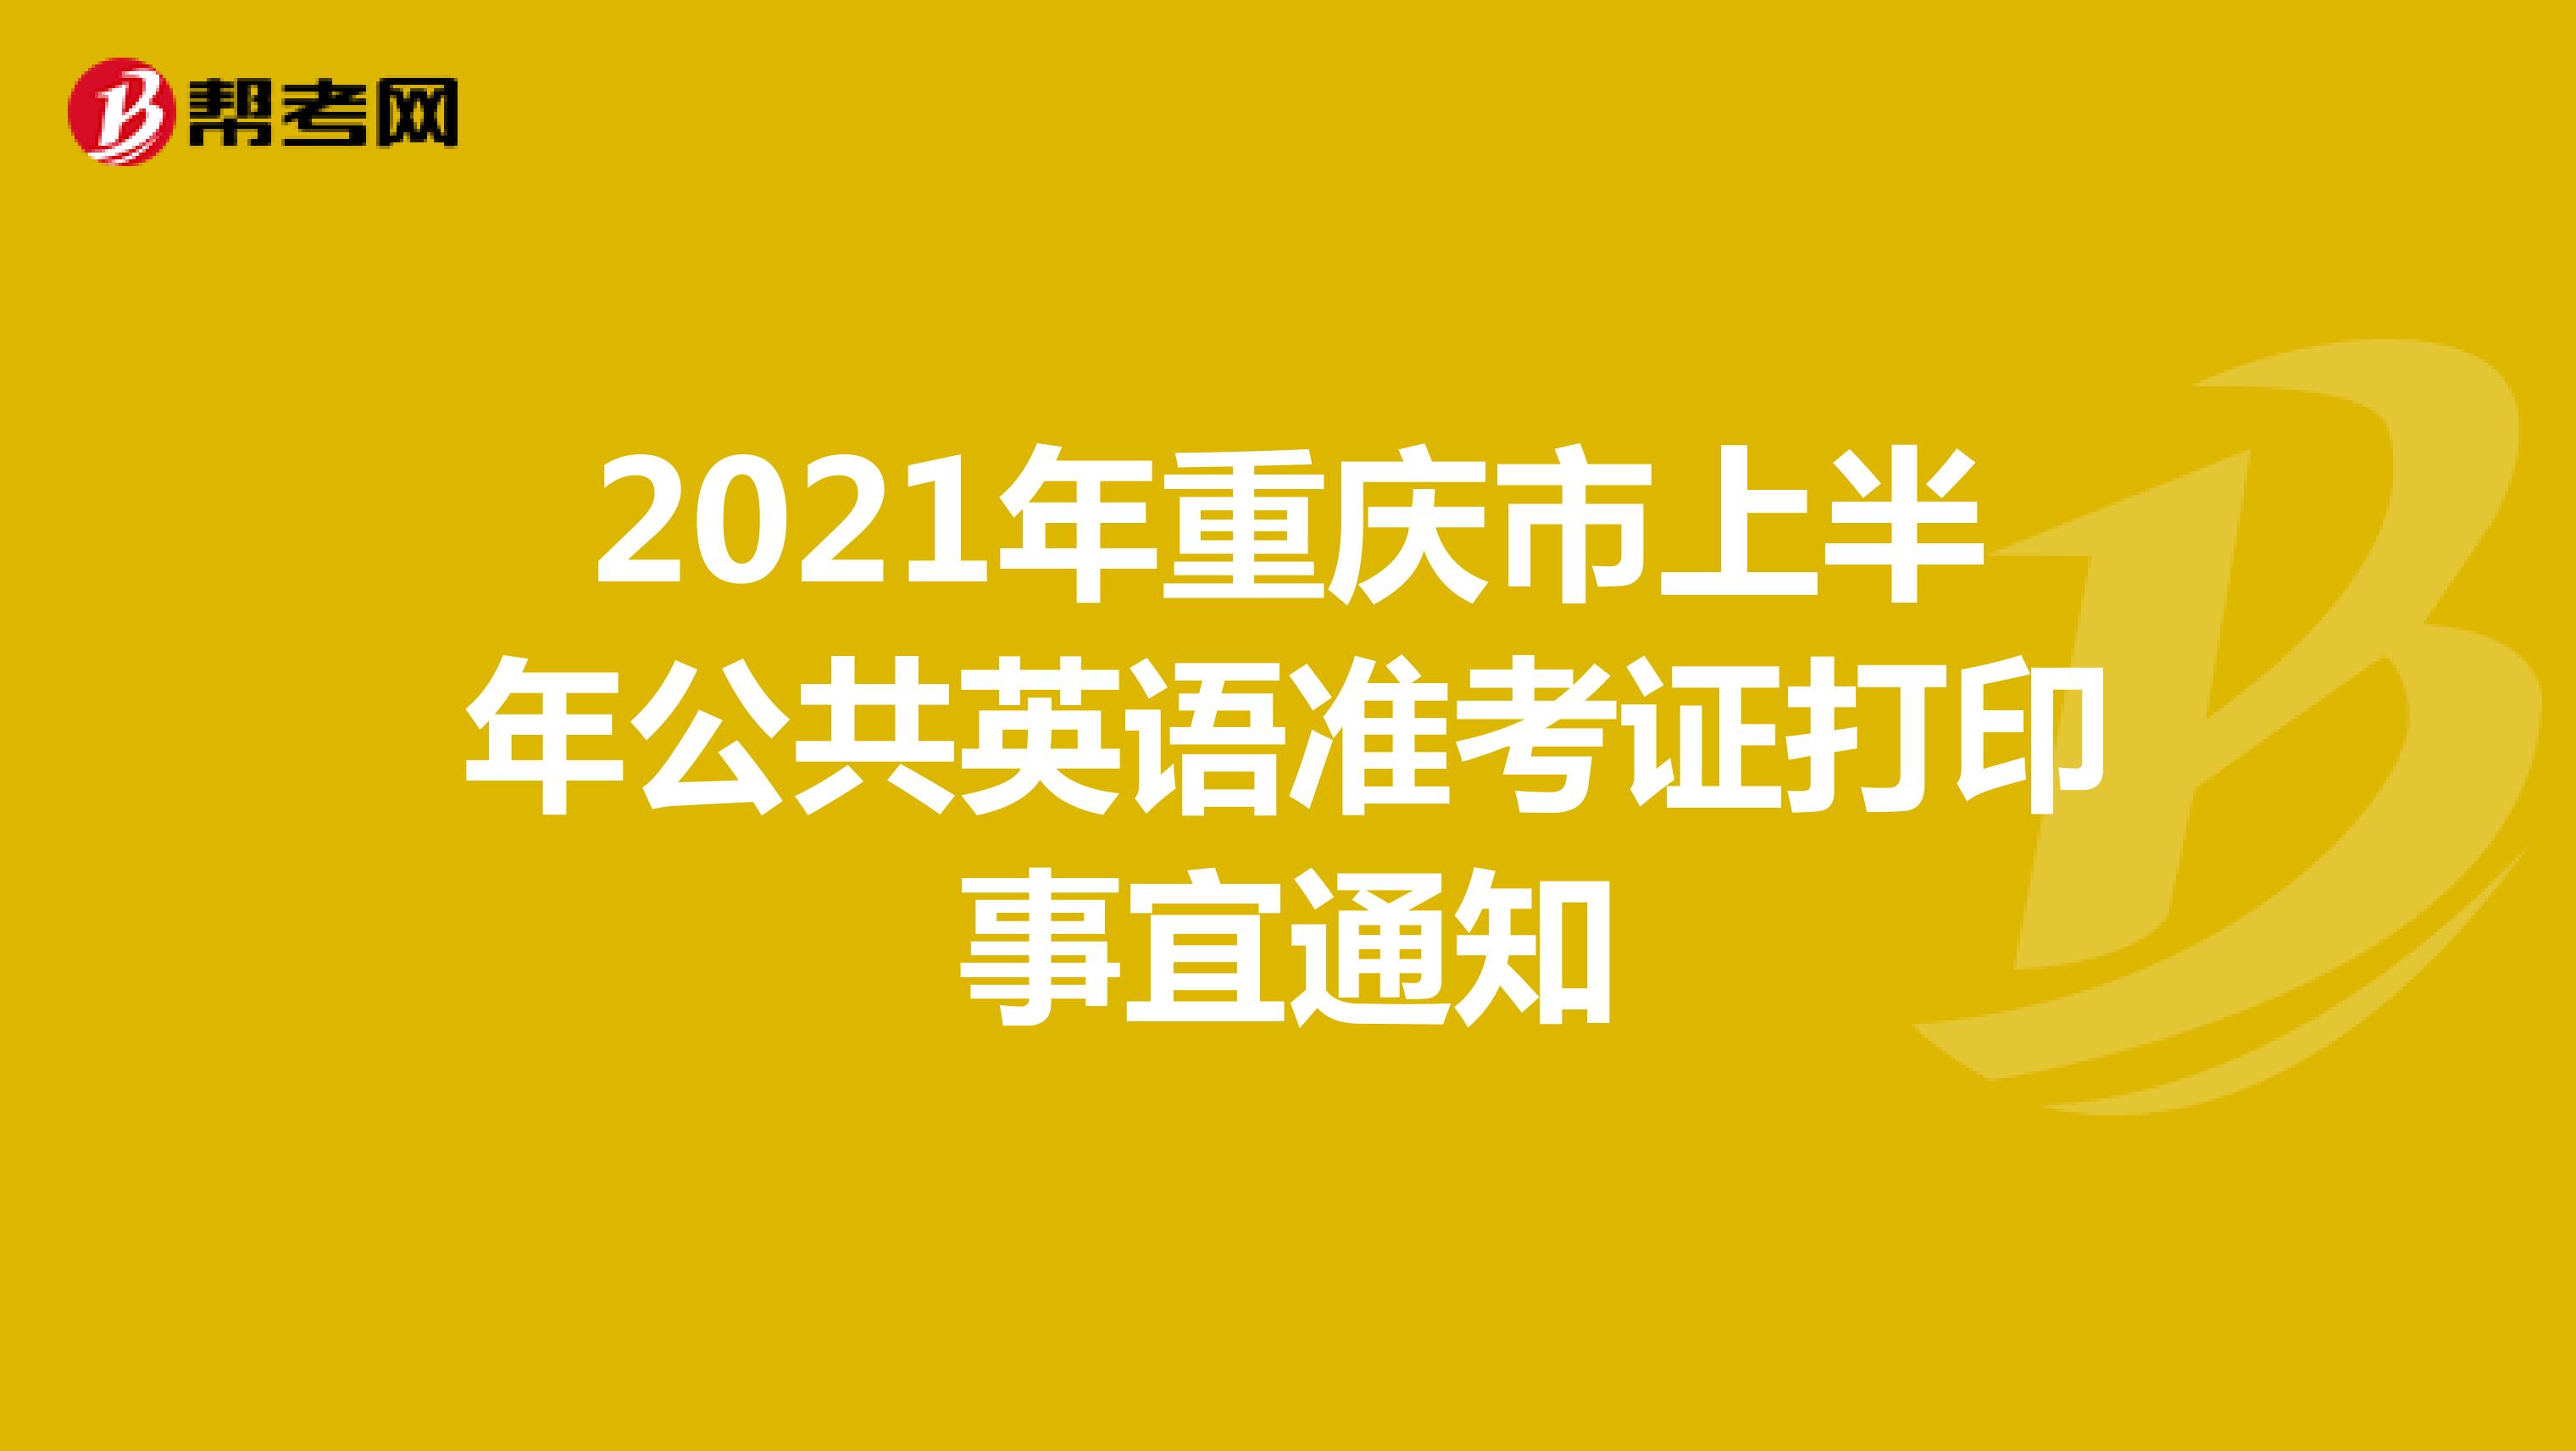 2021年重庆市上半年公共英语准考证打印事宜通知